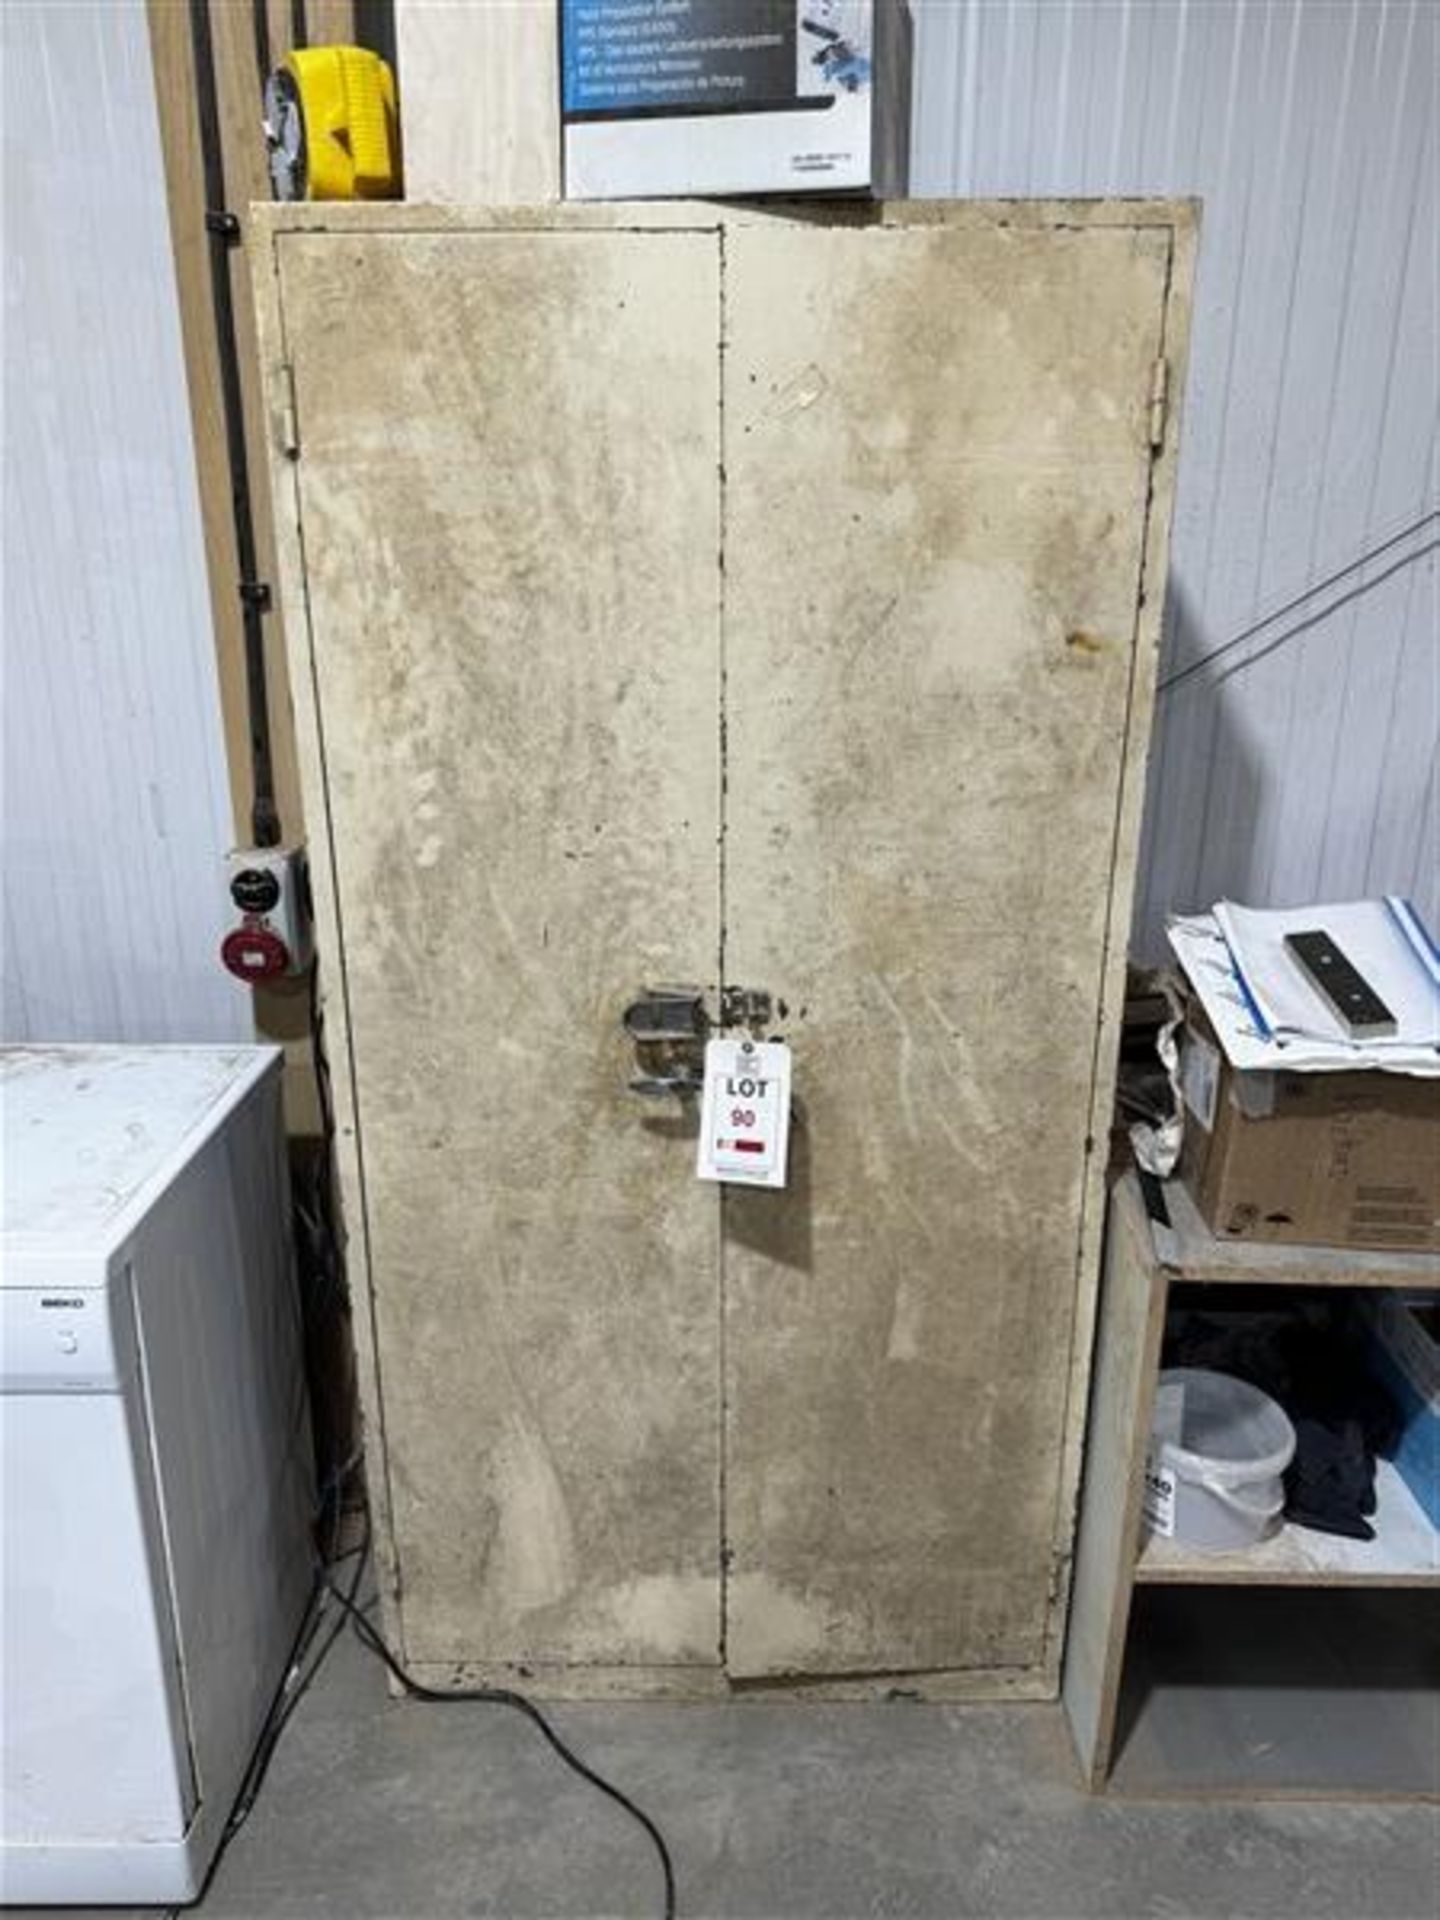 Double door metal storage cabinet height 1.8m x length 90cm x width 45cm